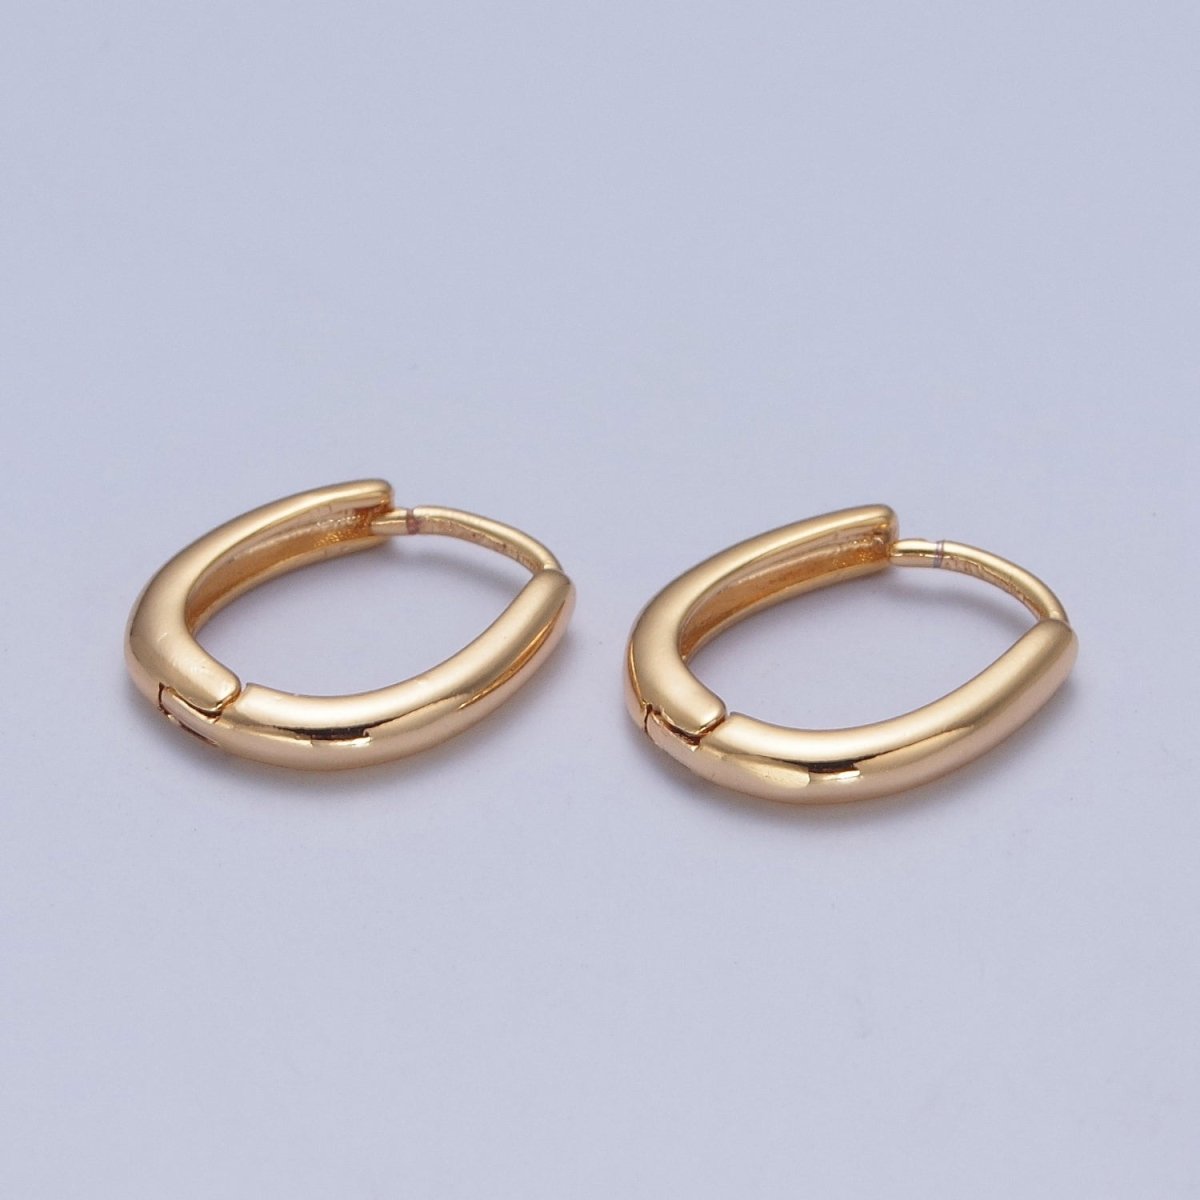 Minimalist Gold Oval U Shaped Huggie Oblong Hoops Earrings | P-304 - DLUXCA